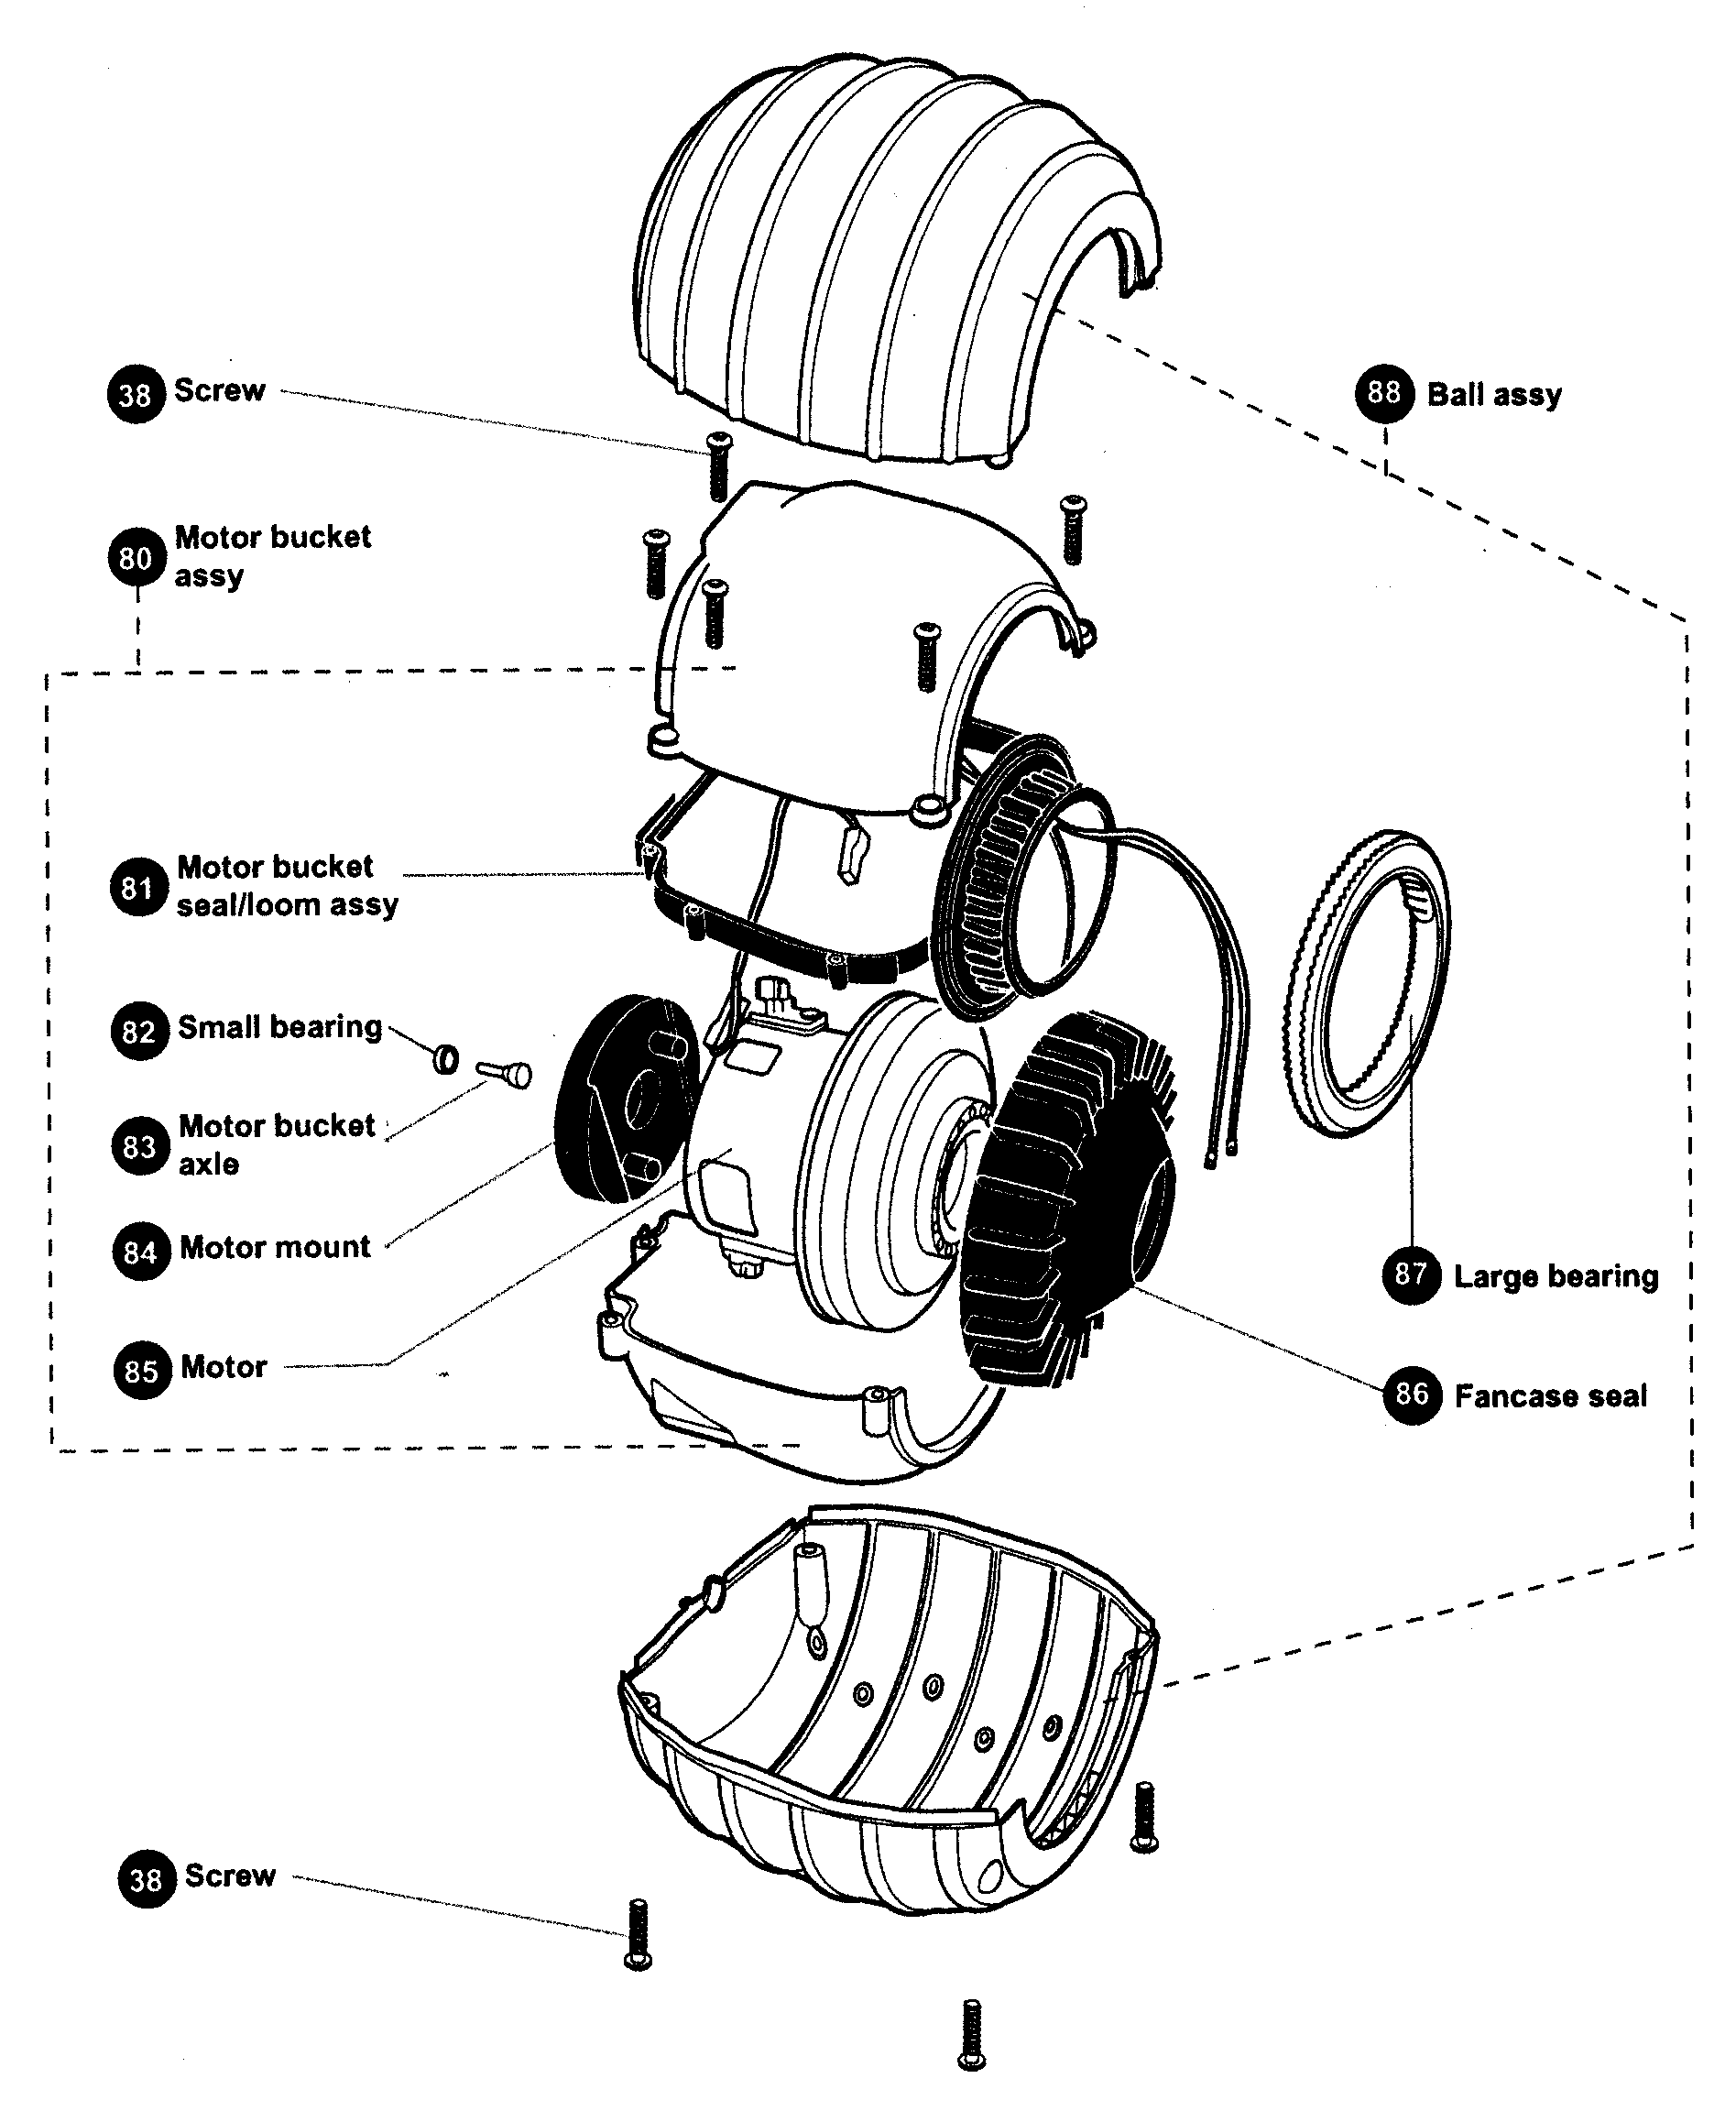 dyson dc15 parts diagram manual